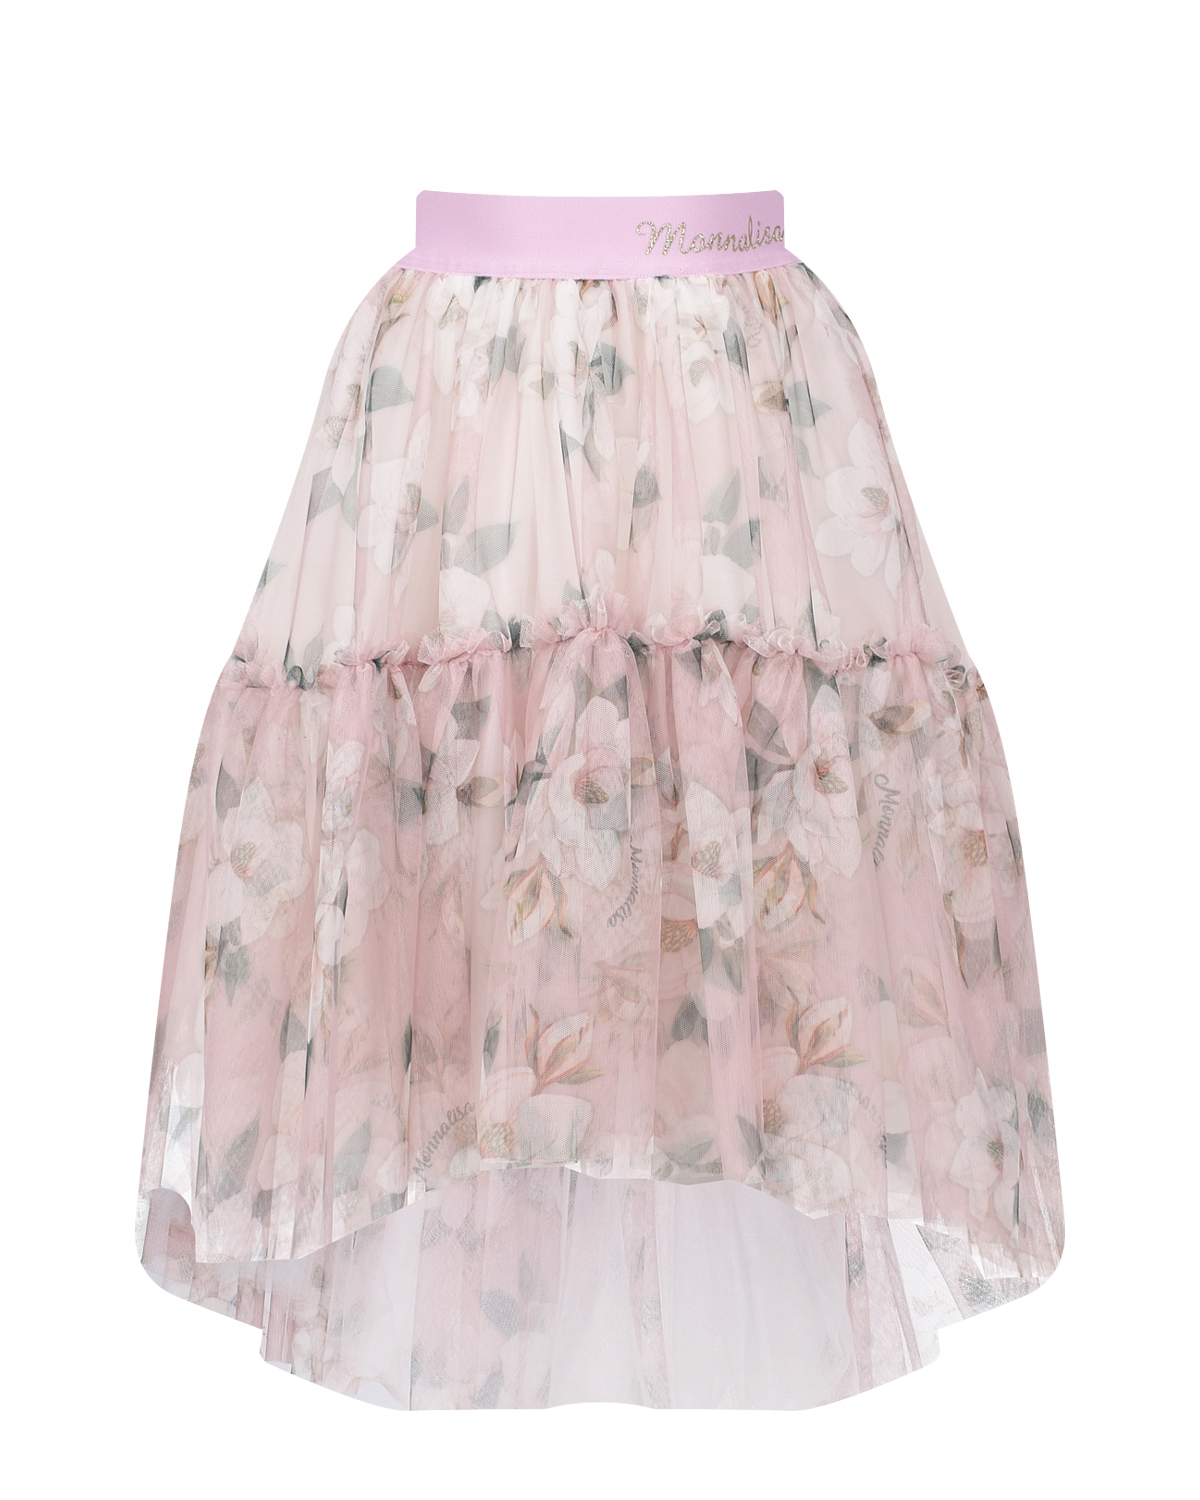 Розовая юбка с цветочным принтом Monnalisa юбка со сплошным очным принтом monnalisa